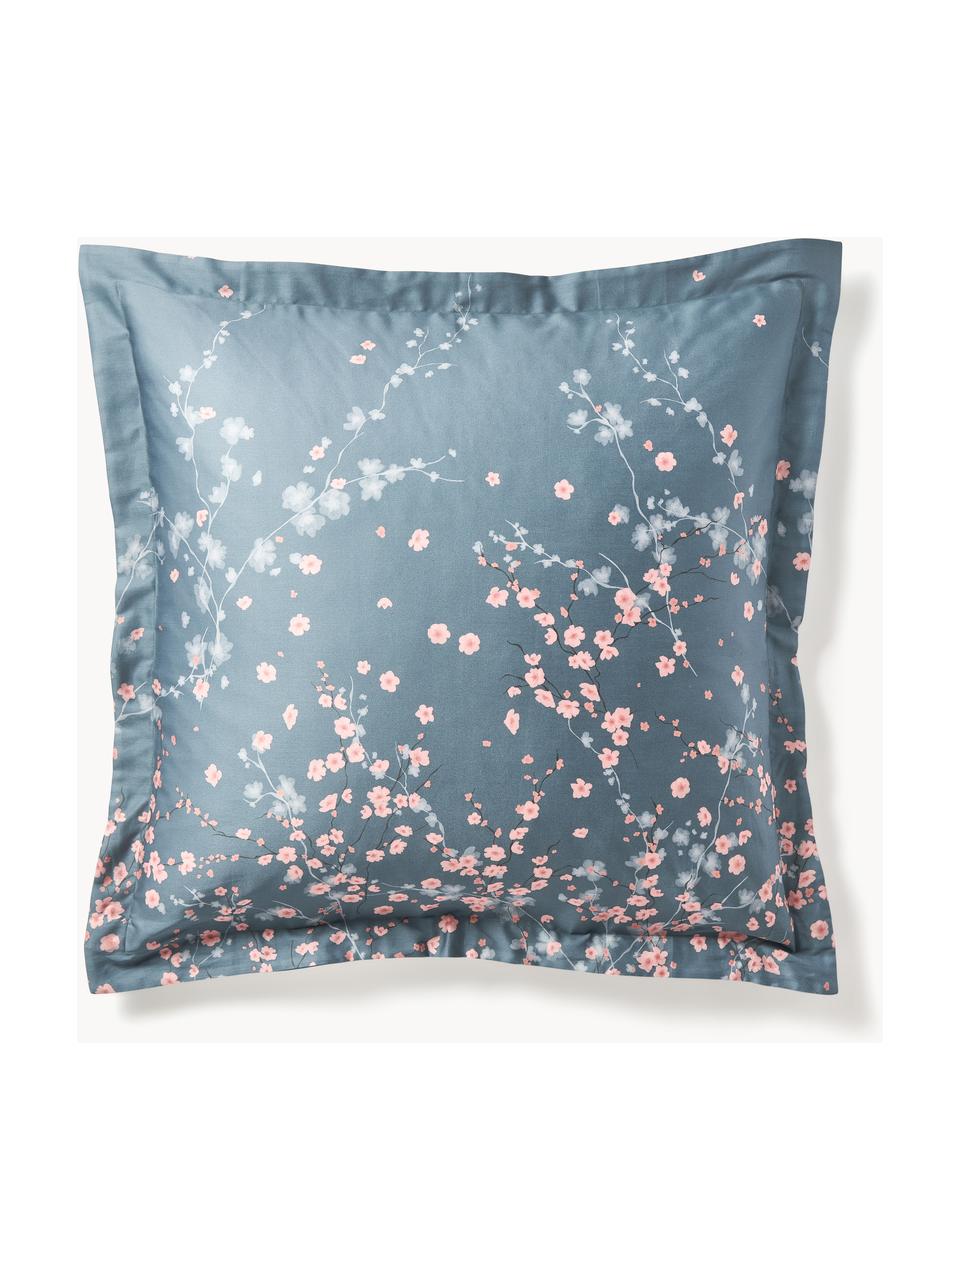 Taie d'oreiller en satin de coton à motif floral Sakura, Bleu, rose pâle, blanc, larg. 50 x long. 70 cm